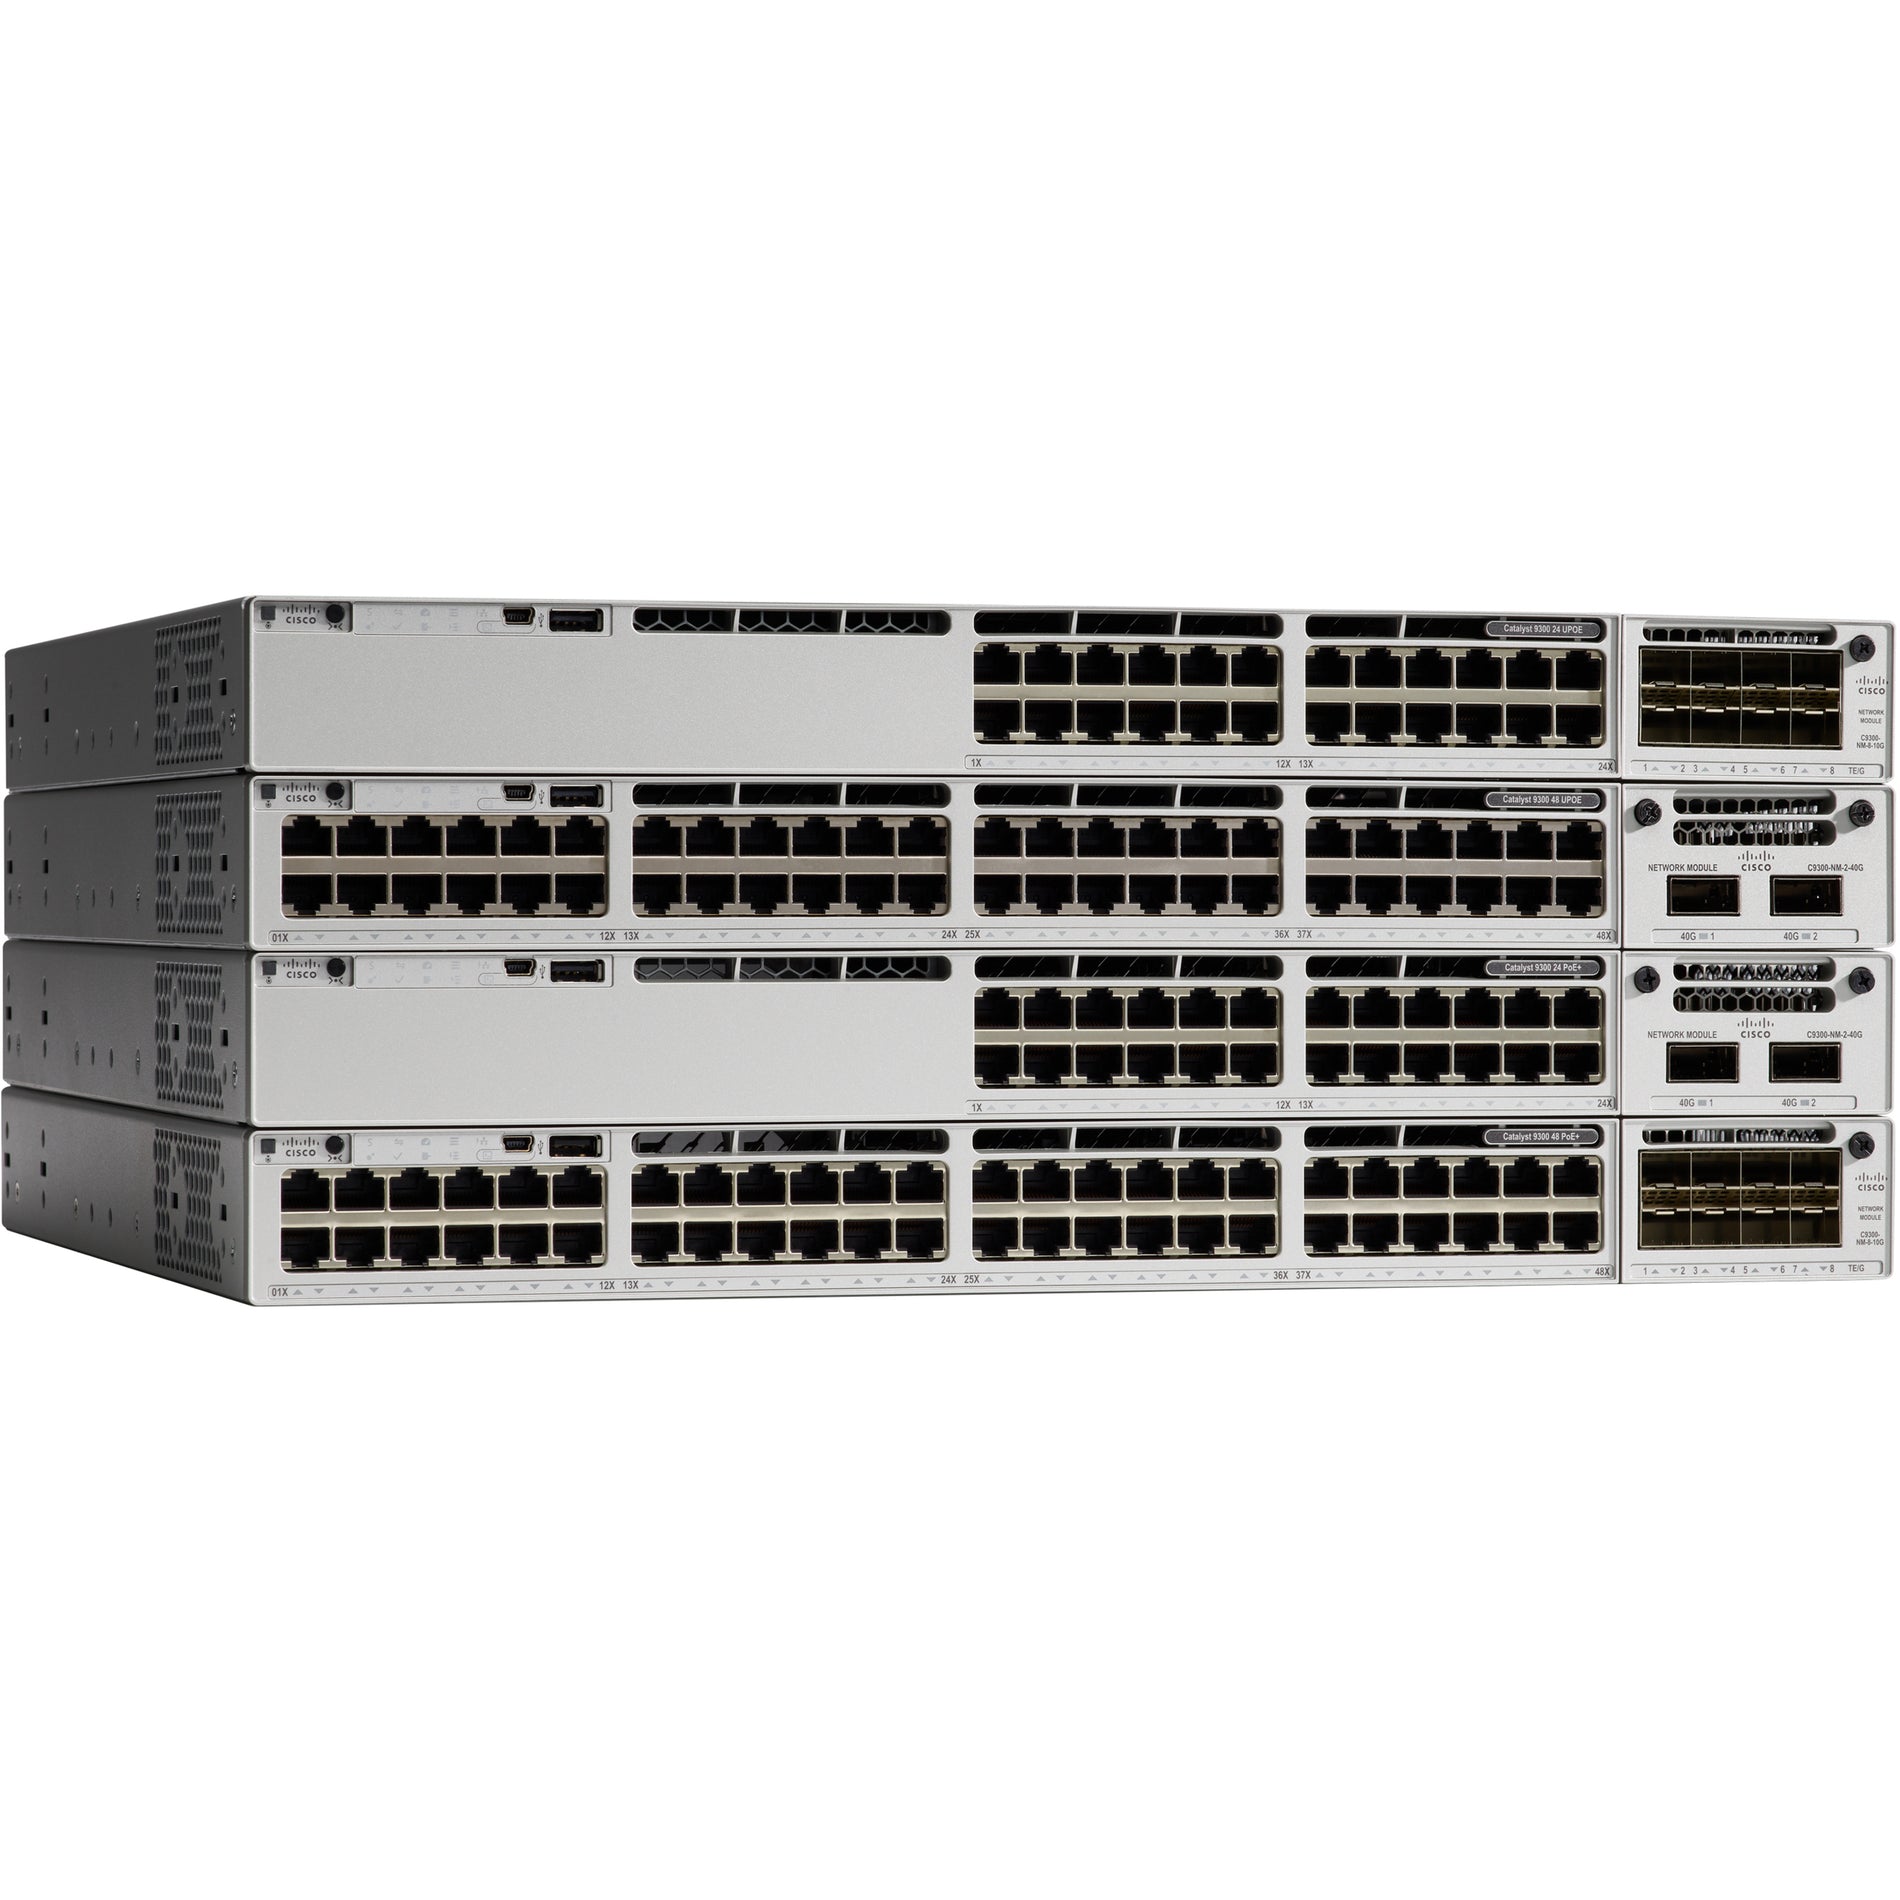 思科 C9300-24UX-E 首发 24 端口网管交换机 思科 - Cisco